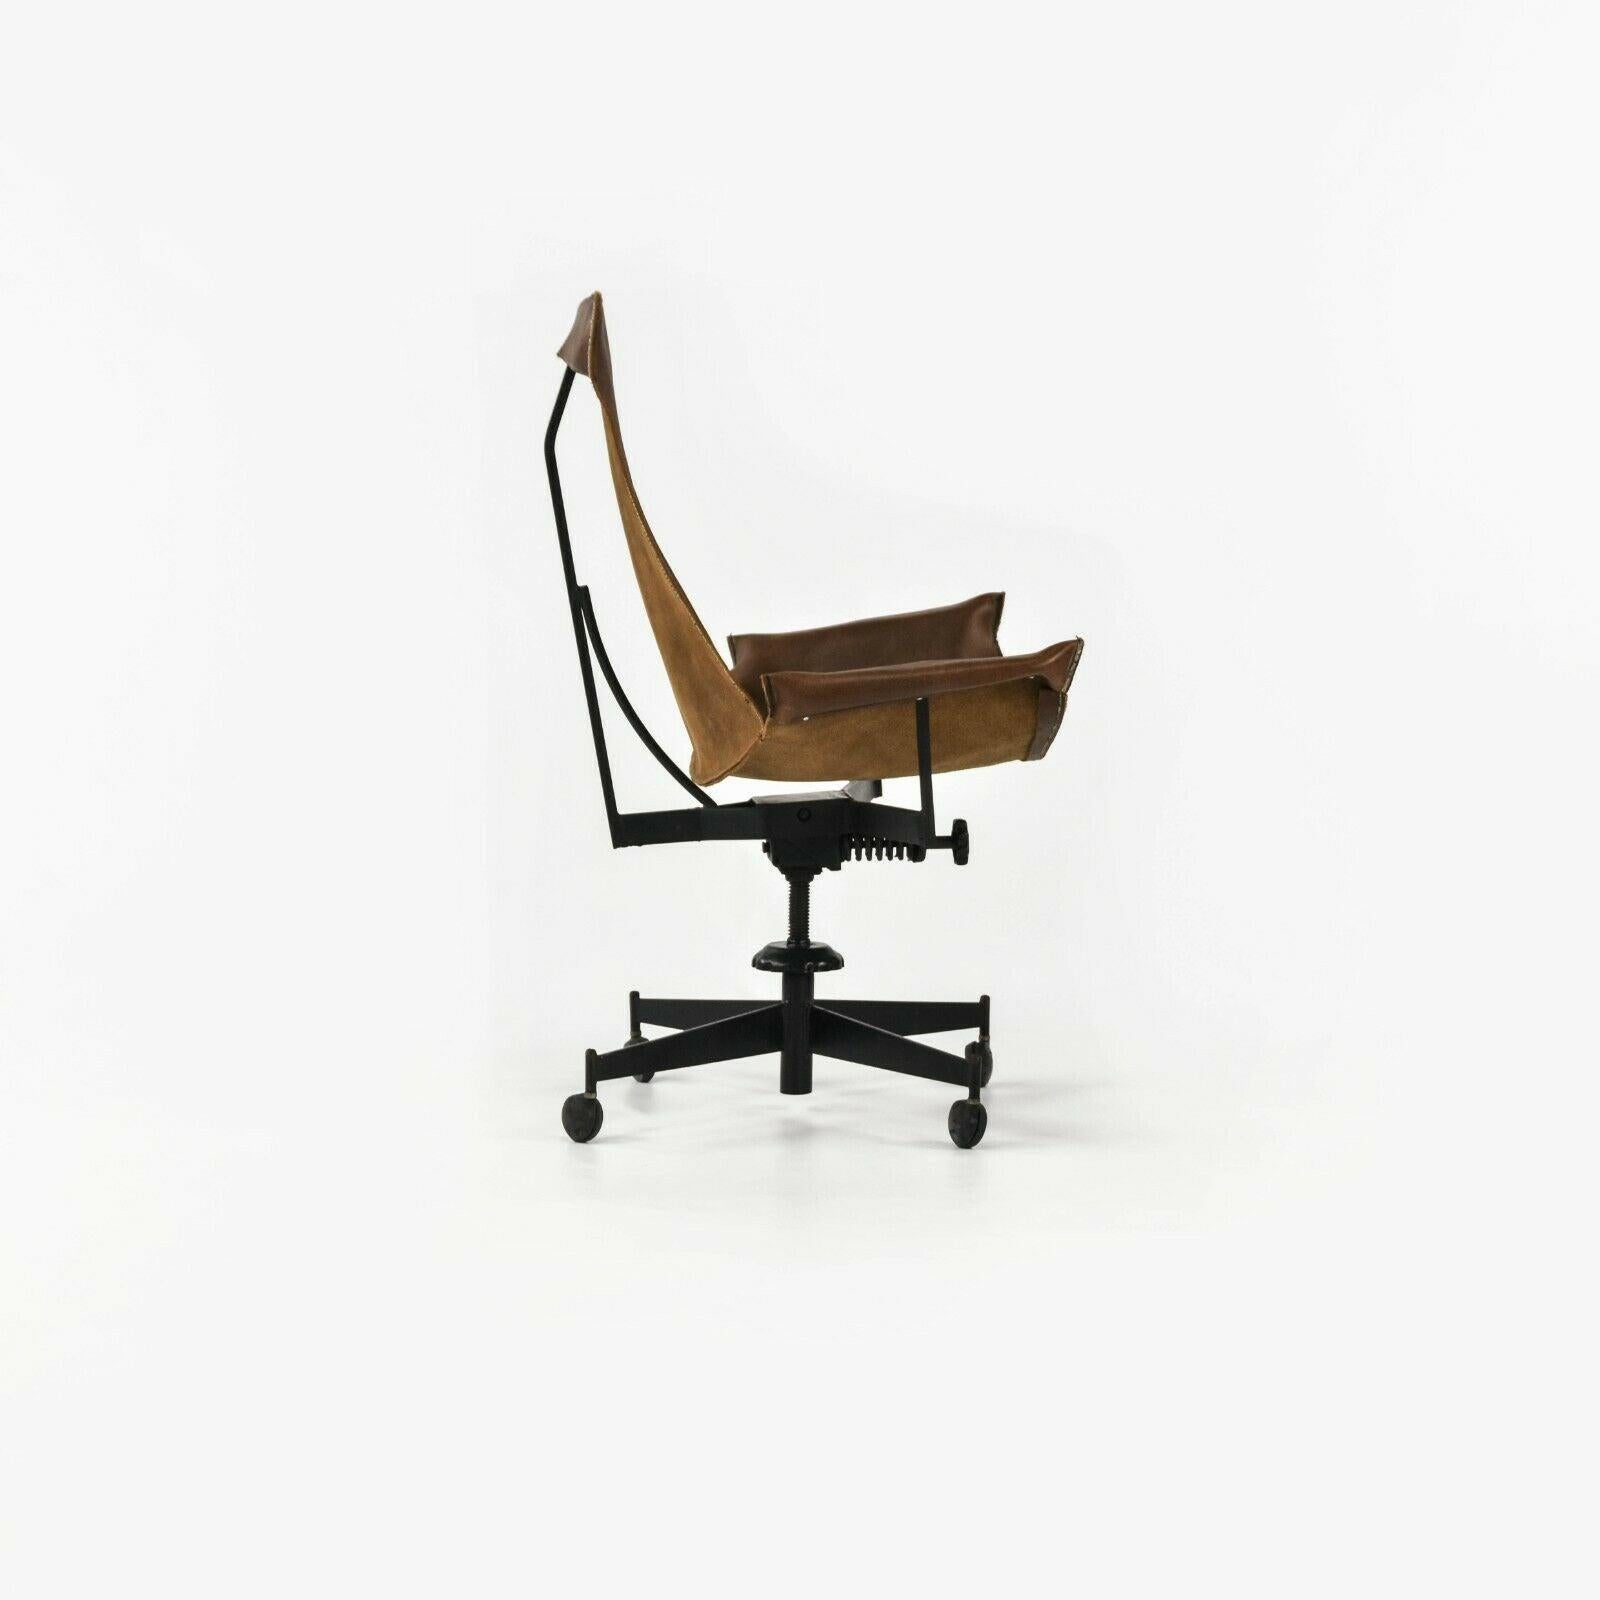 Zum Verkauf angeboten wird ein William Katavolos Swivel K-Chair Schreibtischstuhl für Leathercrafter. Dies ist ein wunderschönes Original aus der Zeit um 1969 mit einem braunen Lederriemen und einem schwarzen Metallsockel. Der Stuhl ist höhen- und